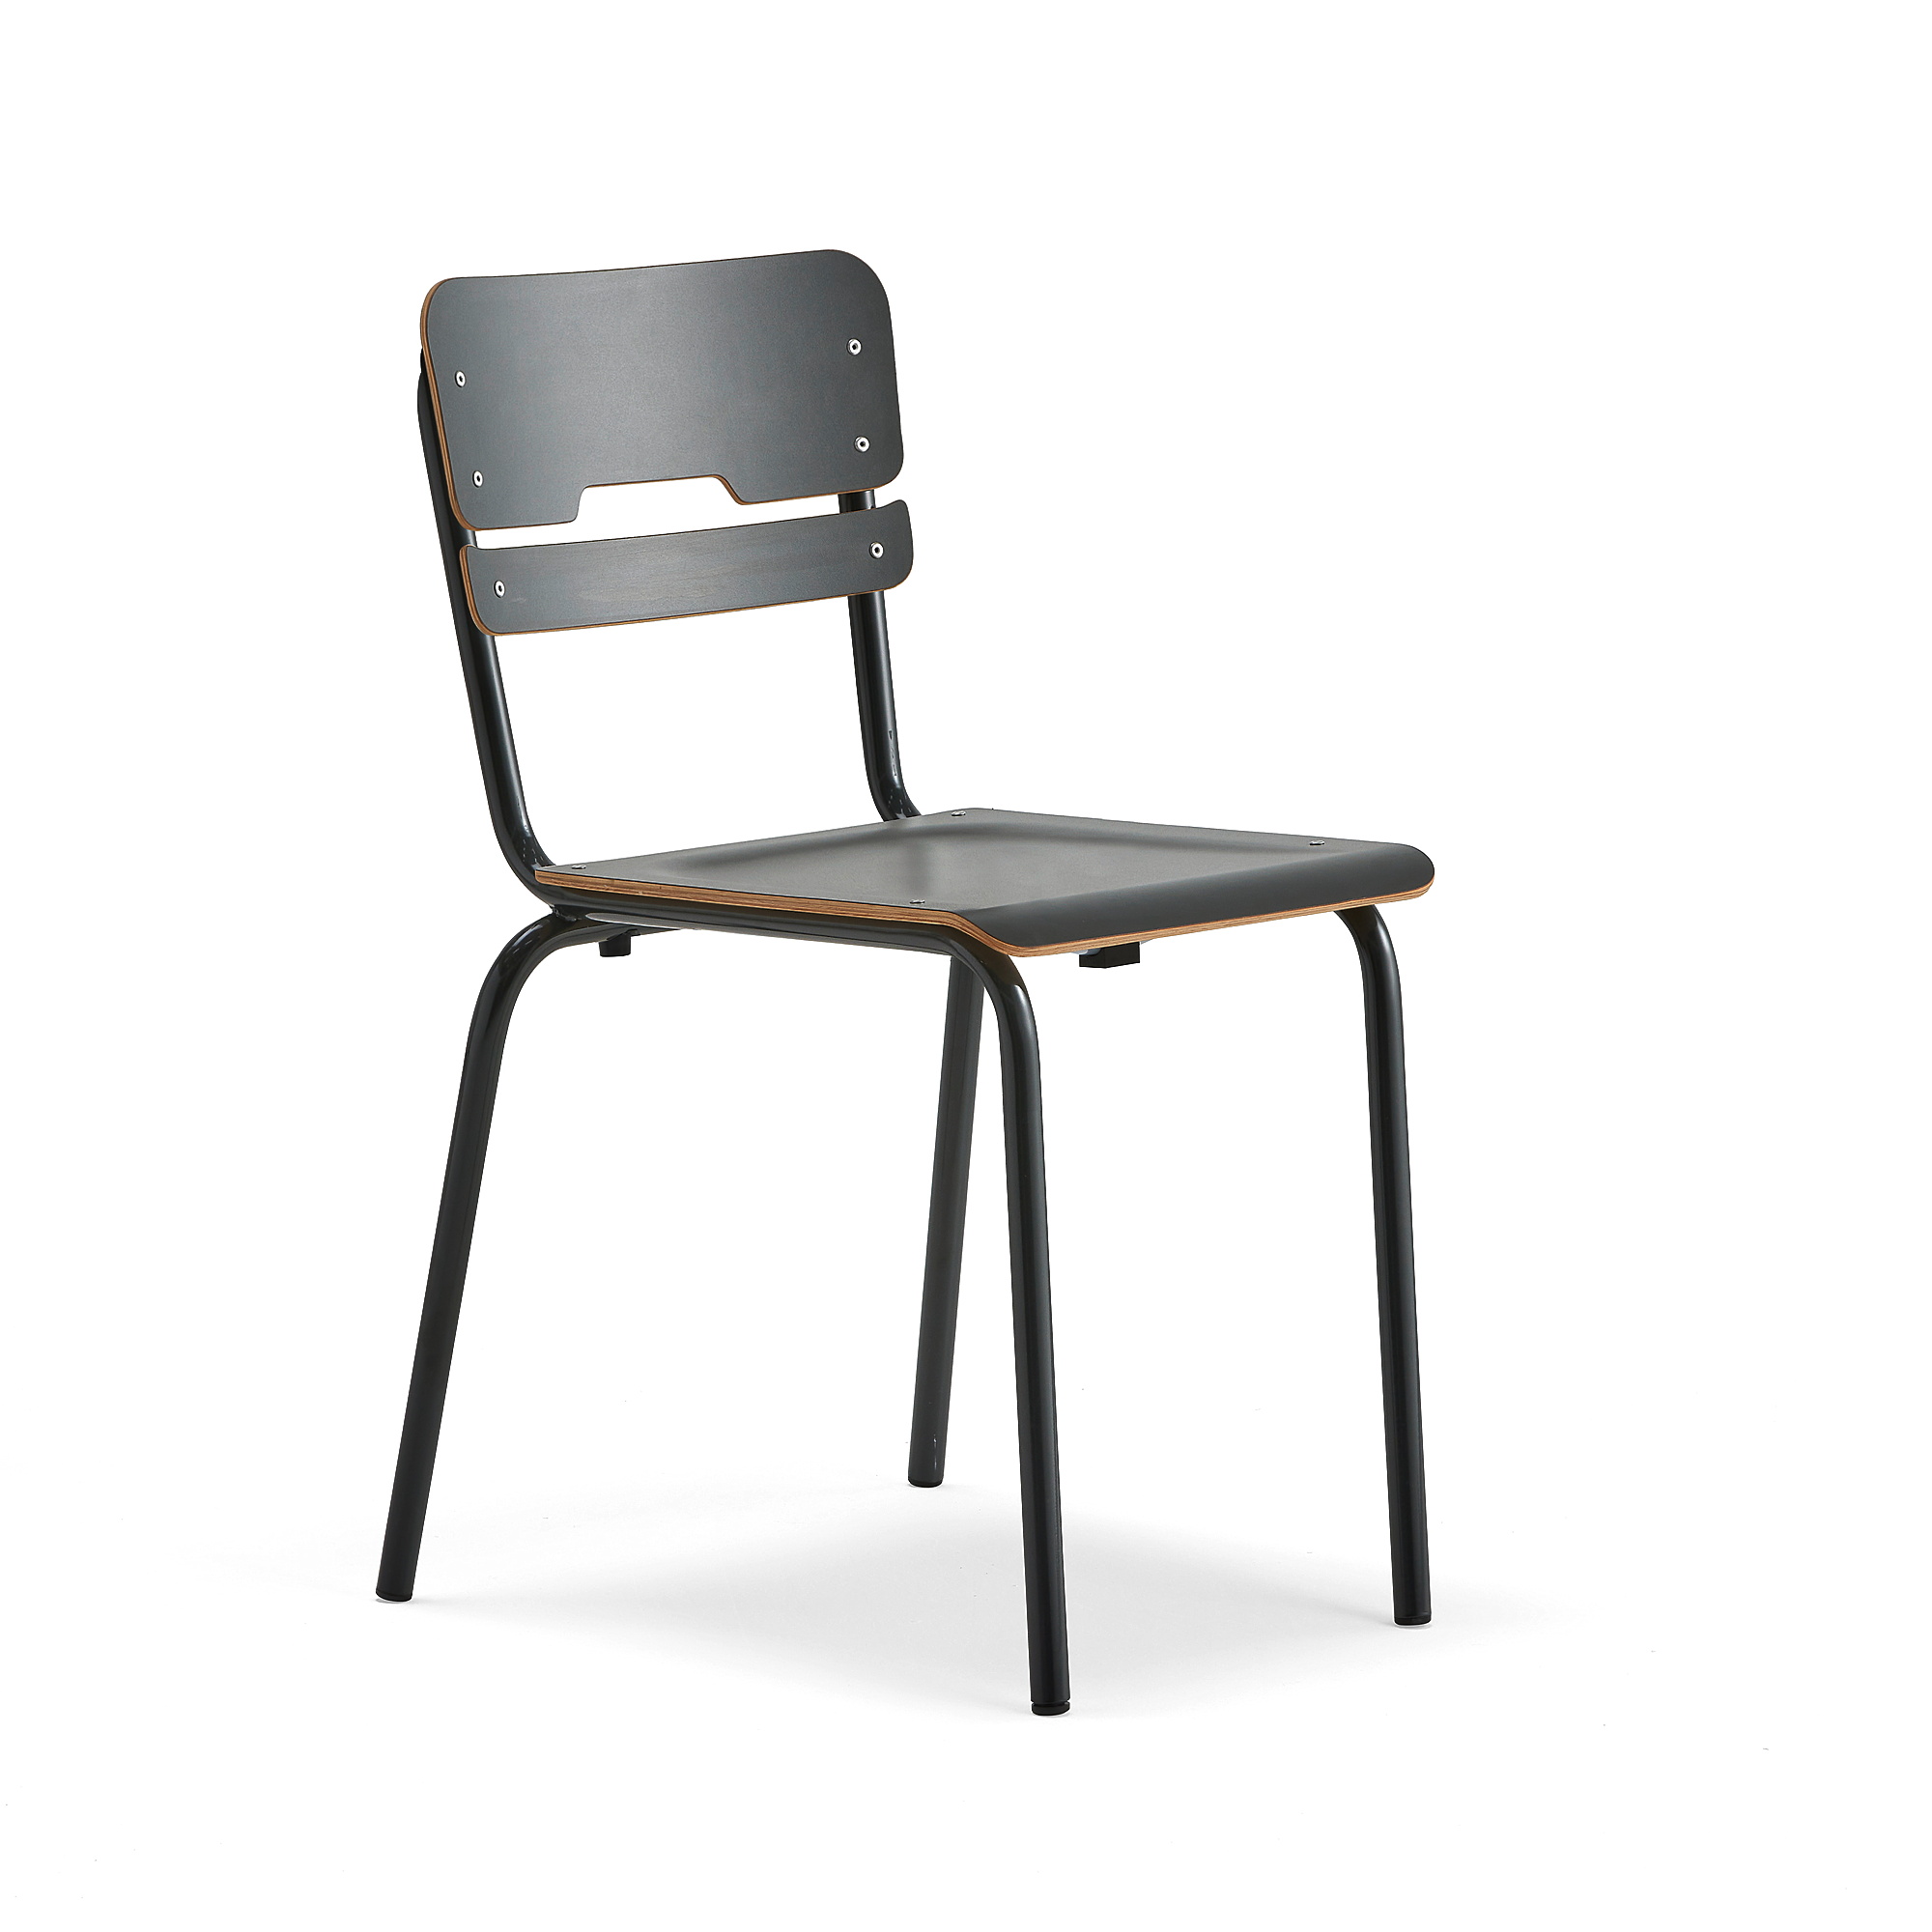 Školní židle SCIENTIA, sedák 390x390 mm, výška 460 mm, antracitová/antracitová